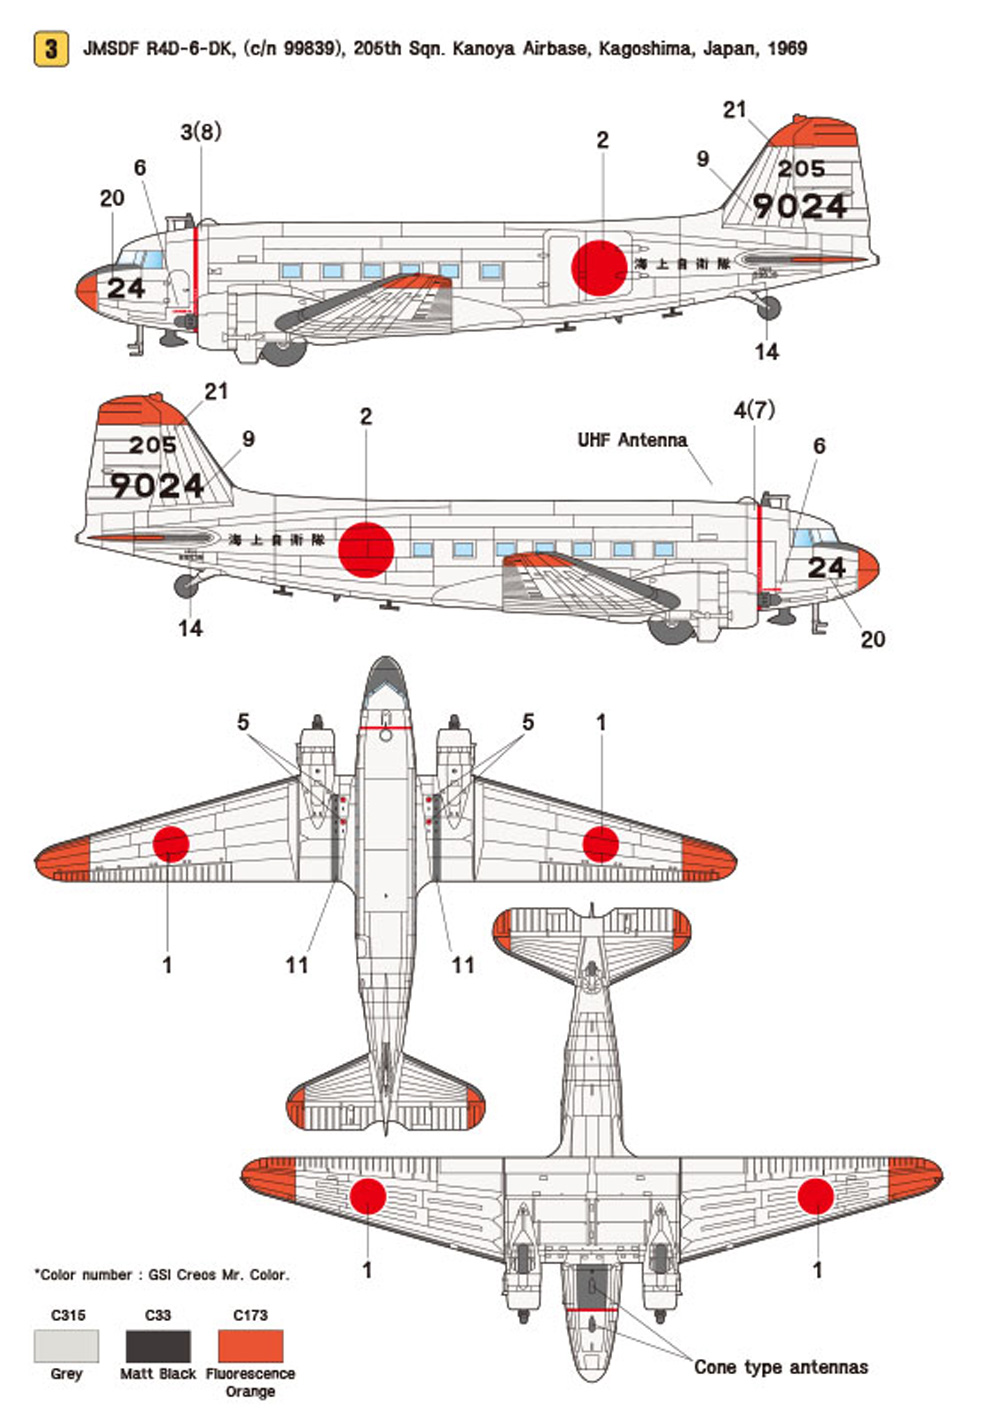 C-47 スカイトレイン Part.2 海上自衛隊 R4D-6s デカール デカール (ウルフパック 1/48 デカール (WD) No.WD48023) 商品画像_4